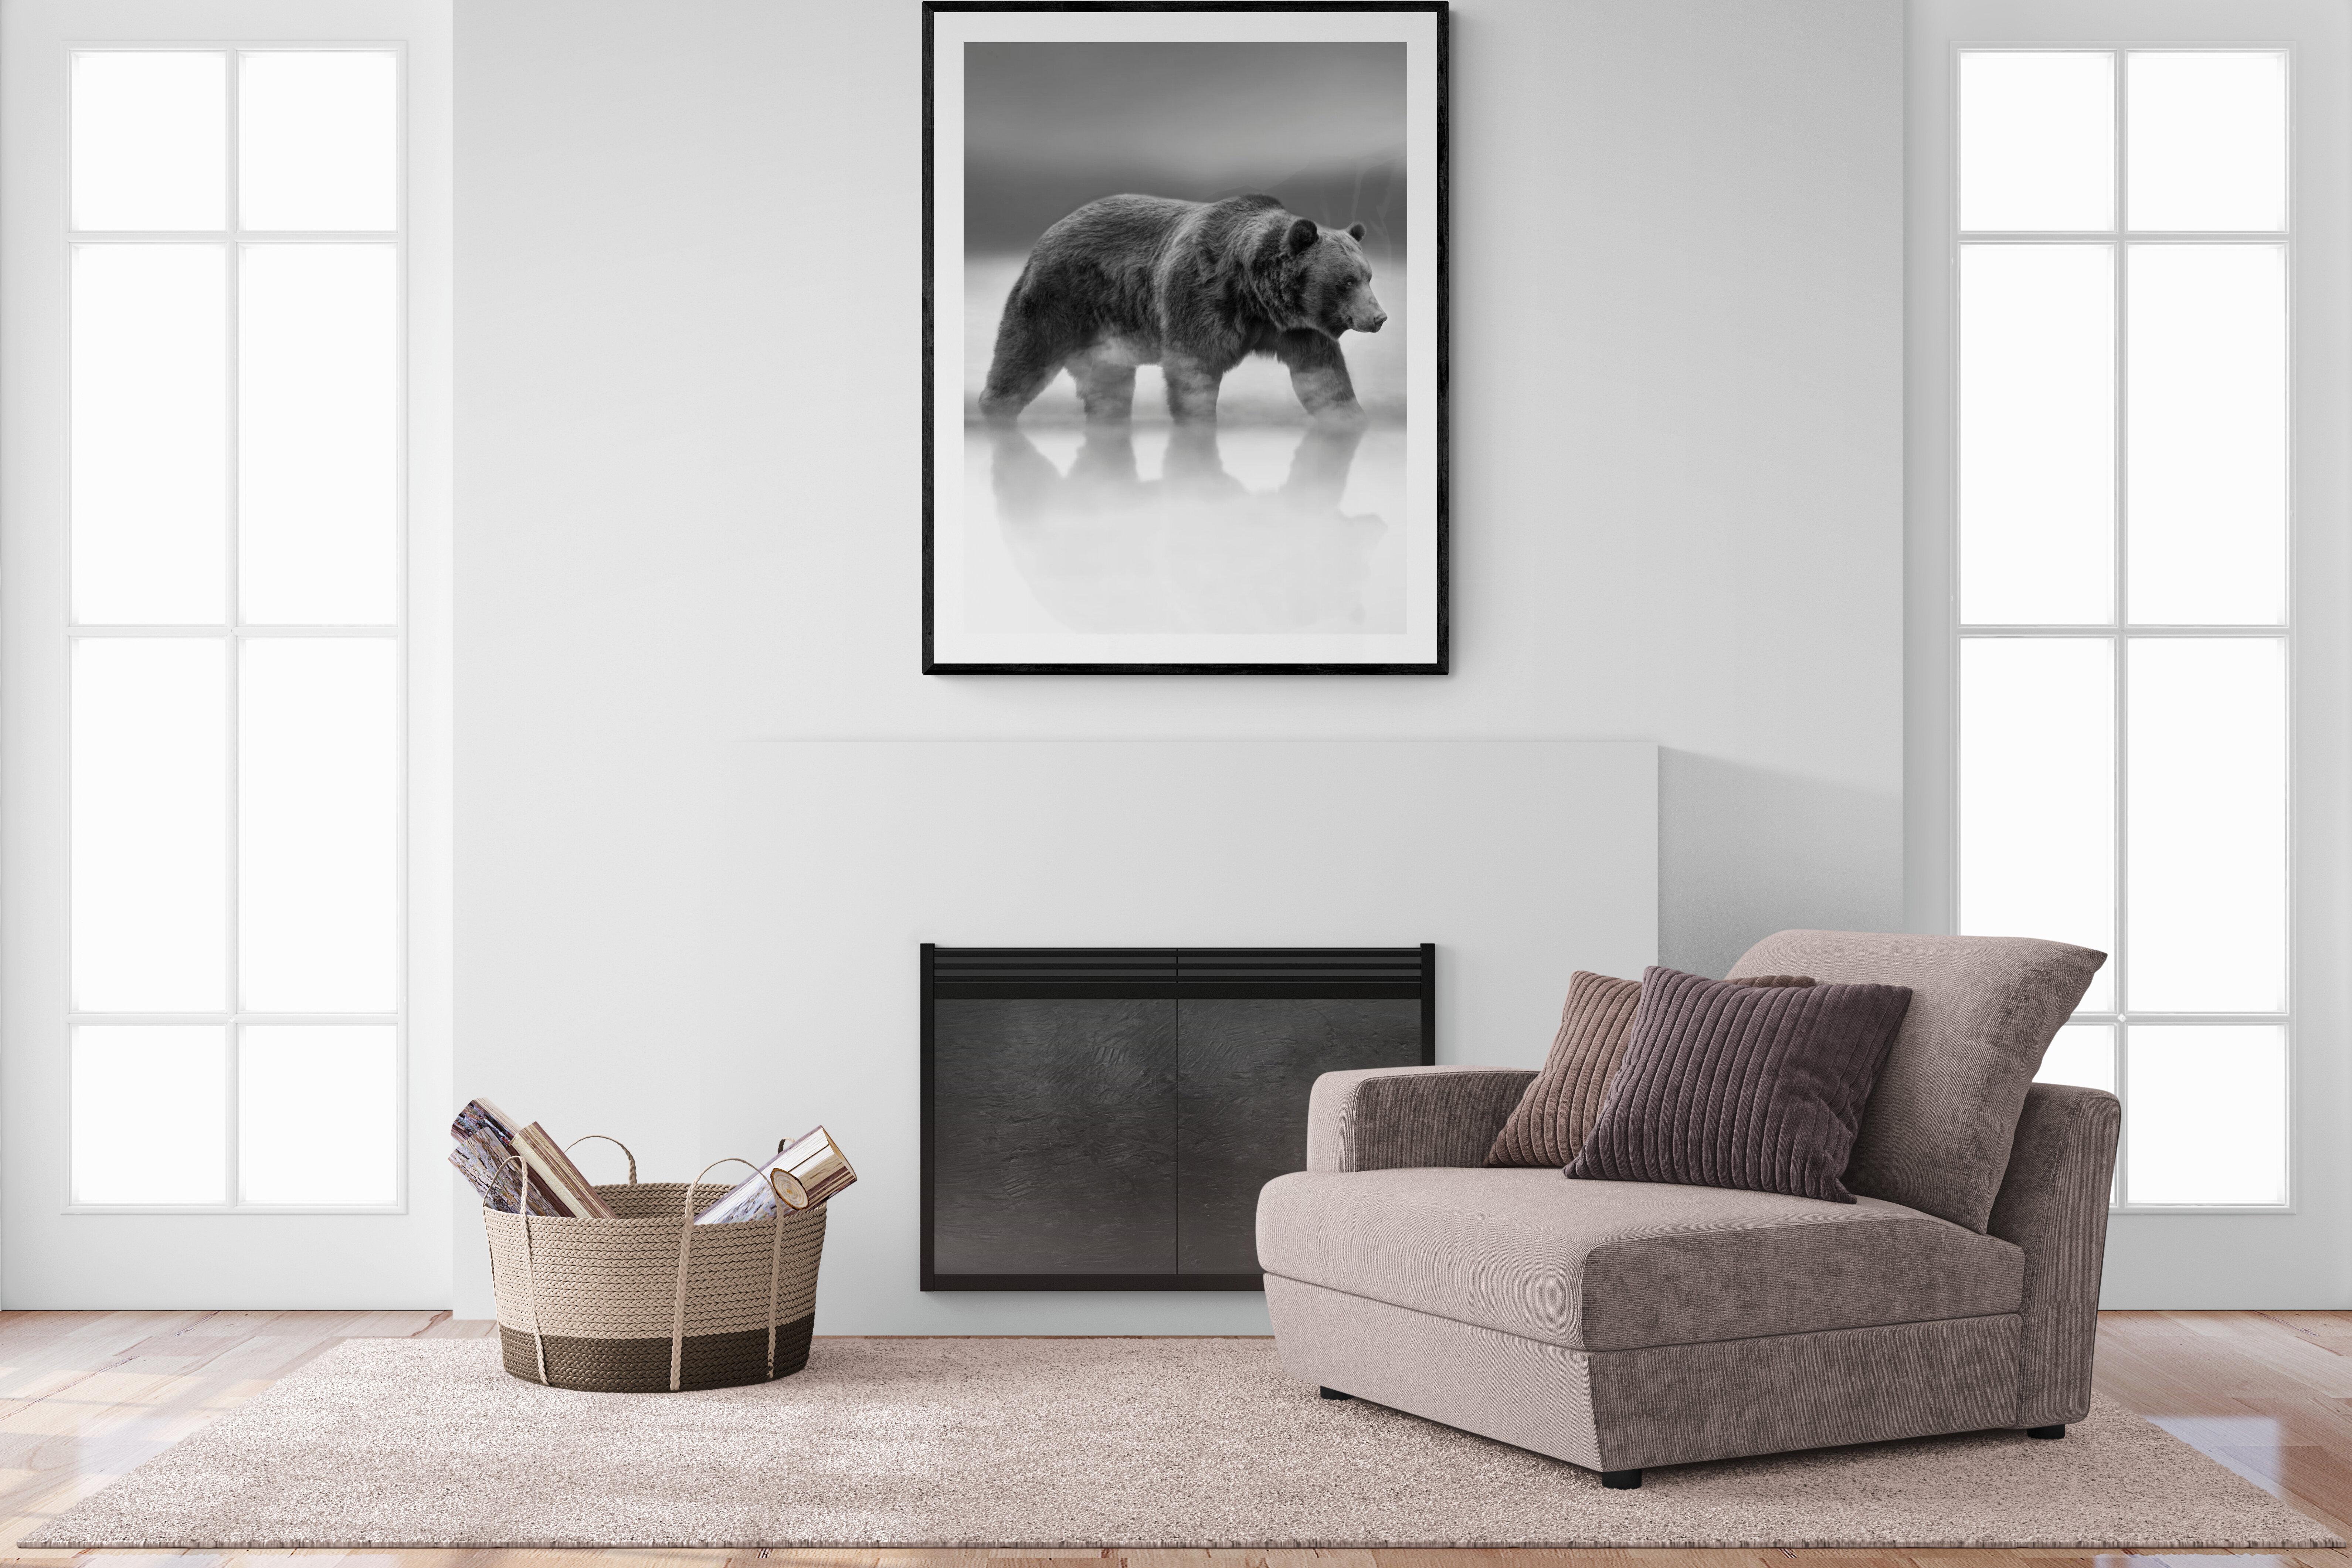 Dies ist eine zeitgenössische Fotografie eines Kodiakbären.  
Dies wurde 2019 auf Kodiak Island gedreht. 
Unsignierter Druck
Archivalisches Pigmentpapier 
Archivtinten
Einrahmung verfügbar. Erkundigen Sie sich nach den Preisen. 


Shane Russeck hat